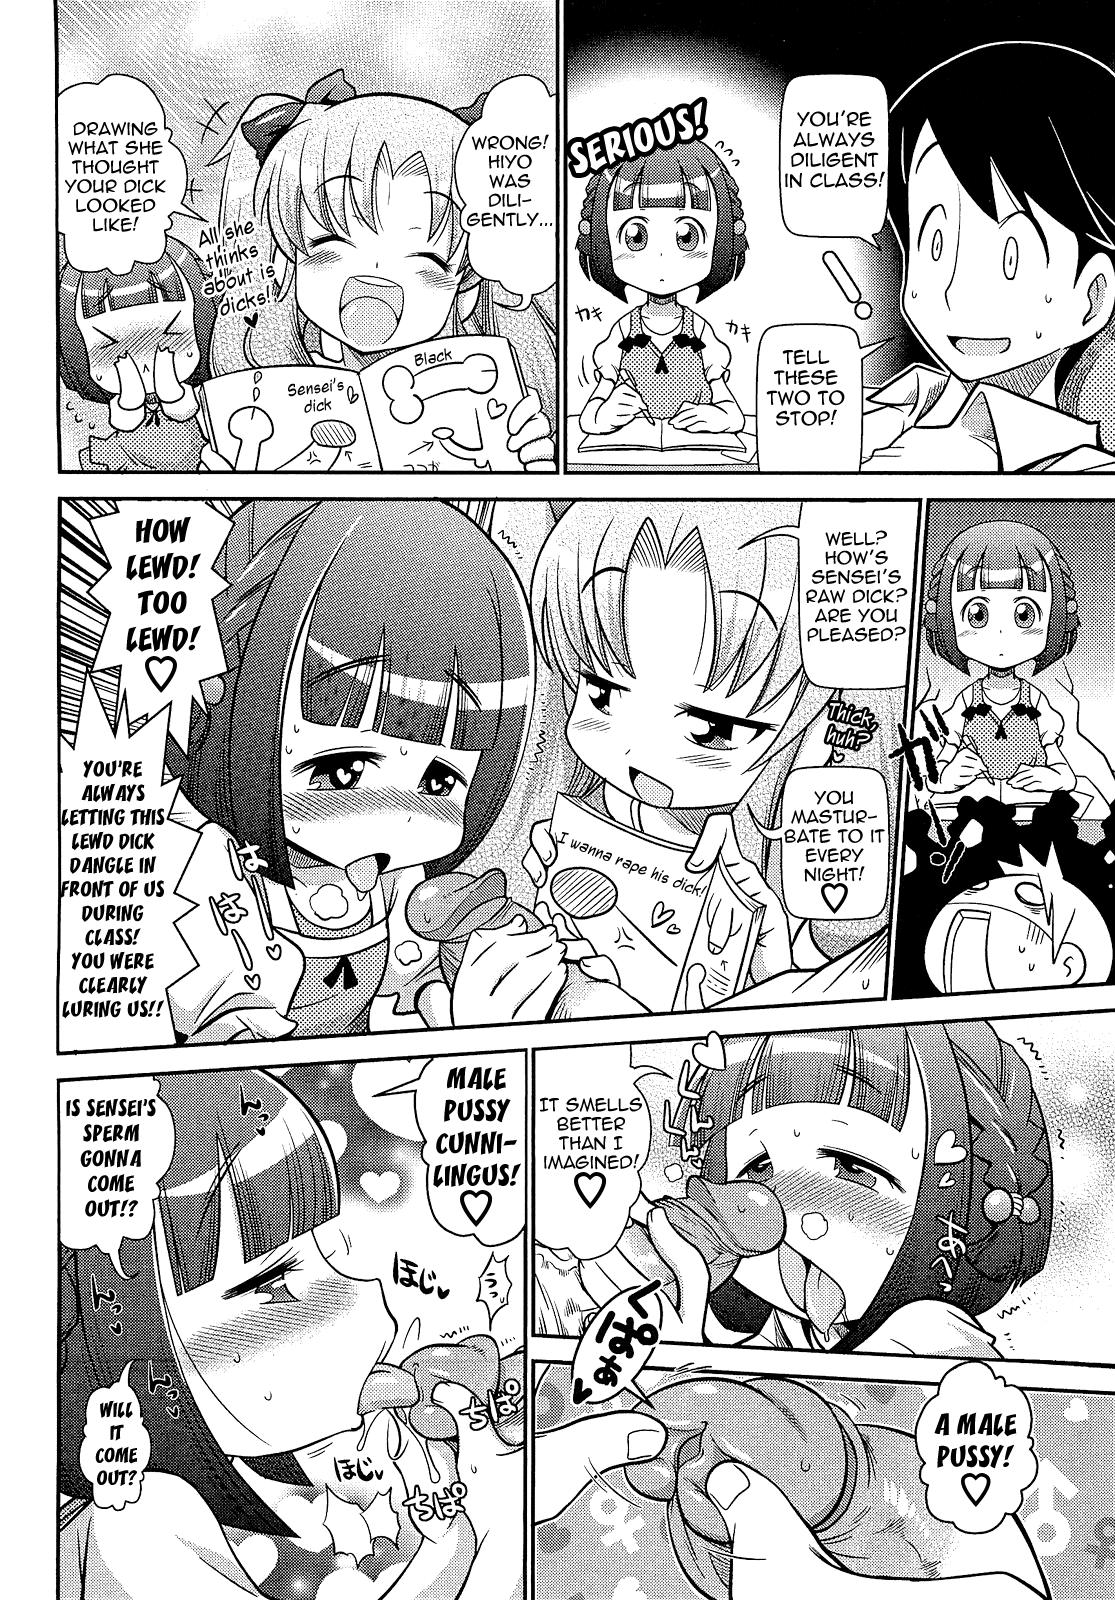 Putas Sensei! Wakarimasen! | Sensei! I Don't Understand! Dad - Page 4